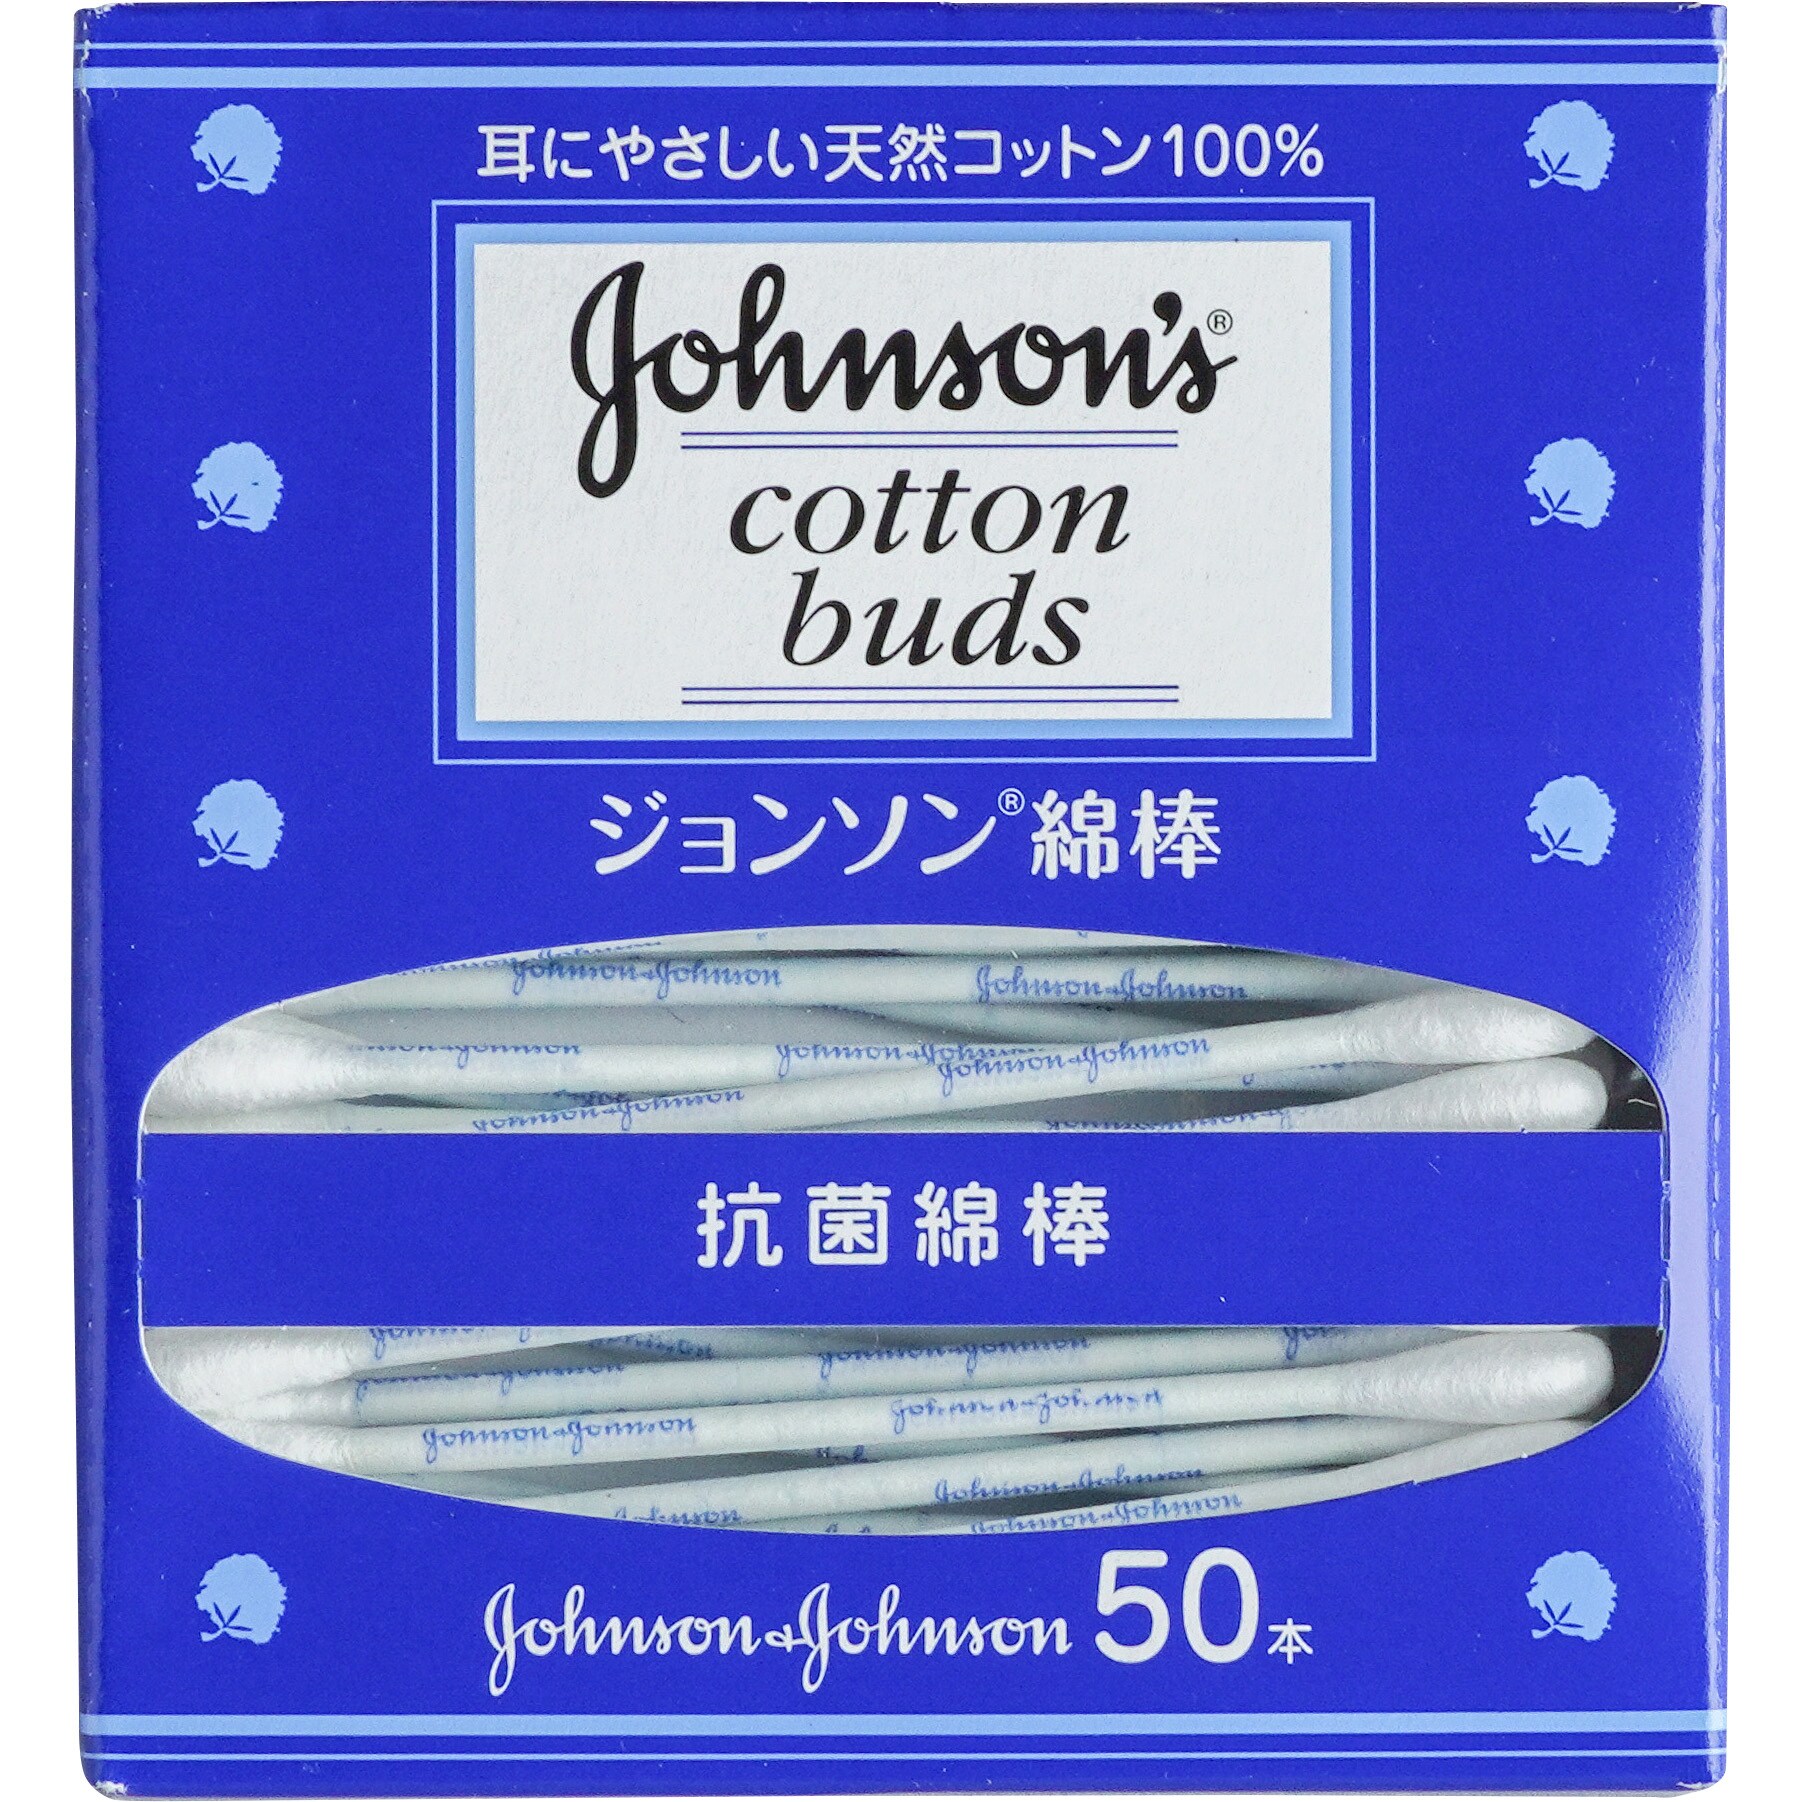 ジョンソンエンドジョンソンジョンソン綿棒 抗菌綿棒 50本入り✖️22箱